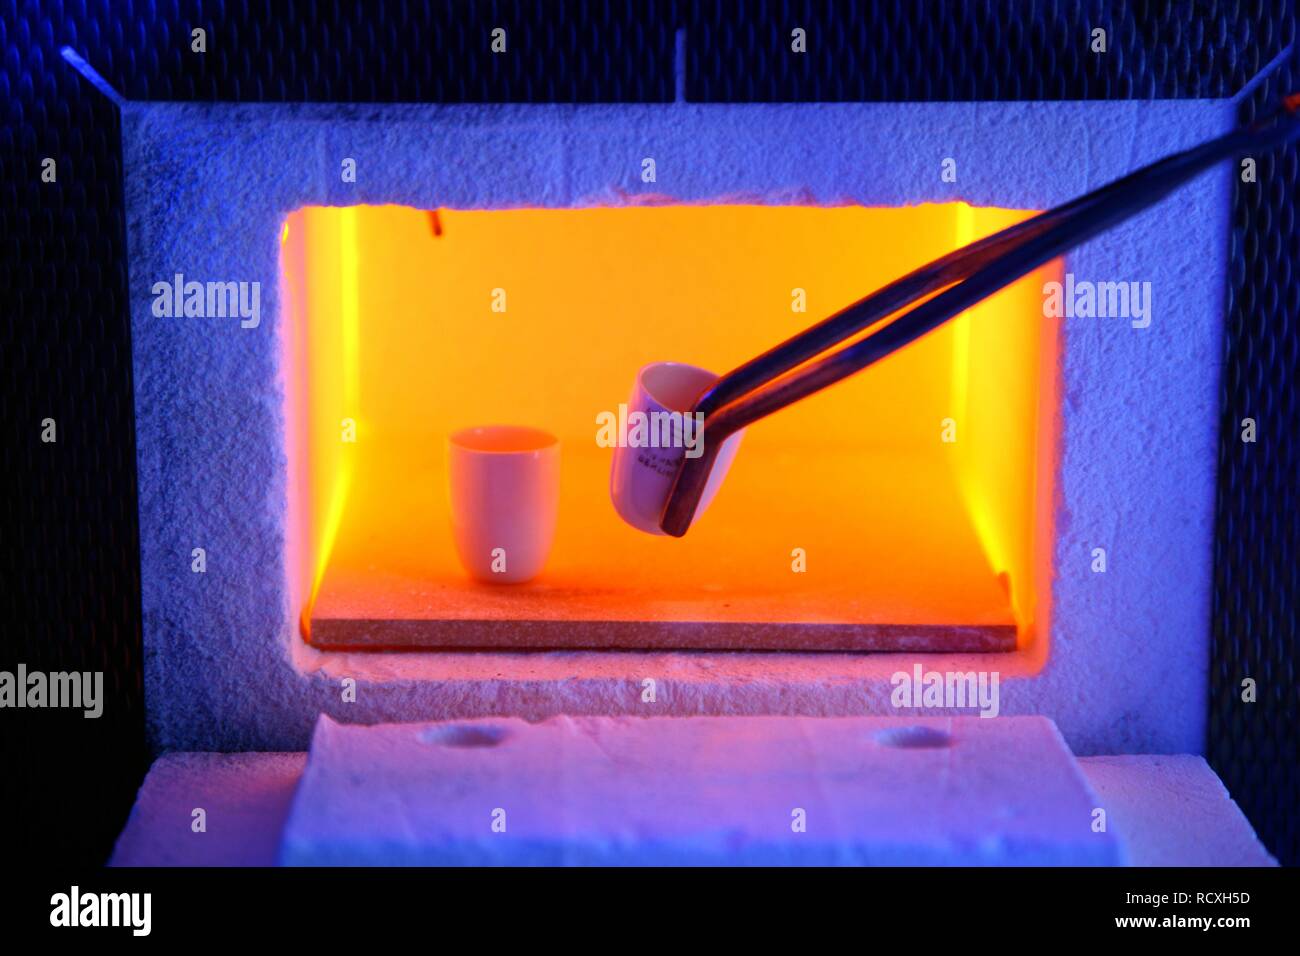 Horno de alta temperatura, con temperaturas de hasta 1000° C, donde se funden las muestras para pruebas de laboratorio Foto de stock